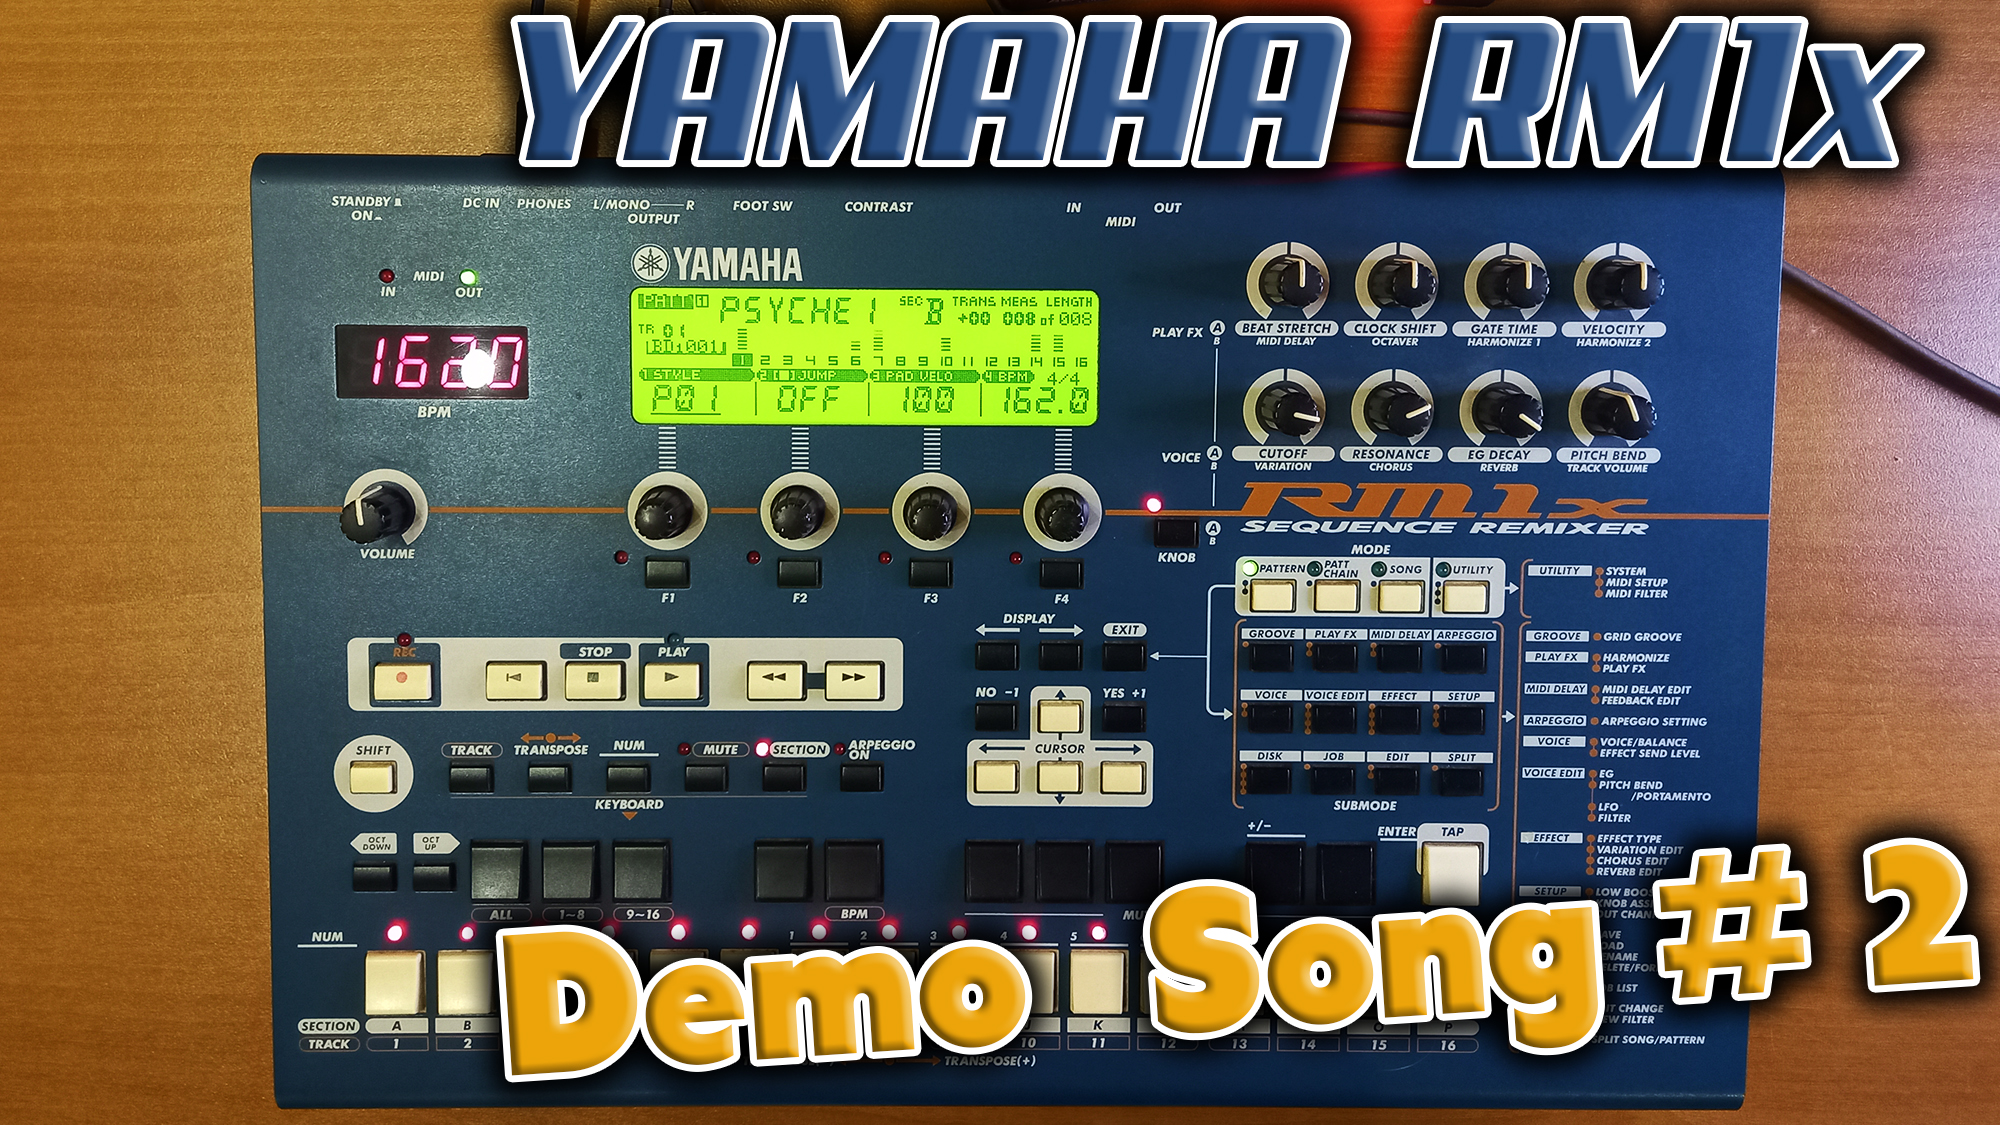 Грувбокс из далёкого 1999 года - Yamaha RM1x !  Слушаем Demo song #2